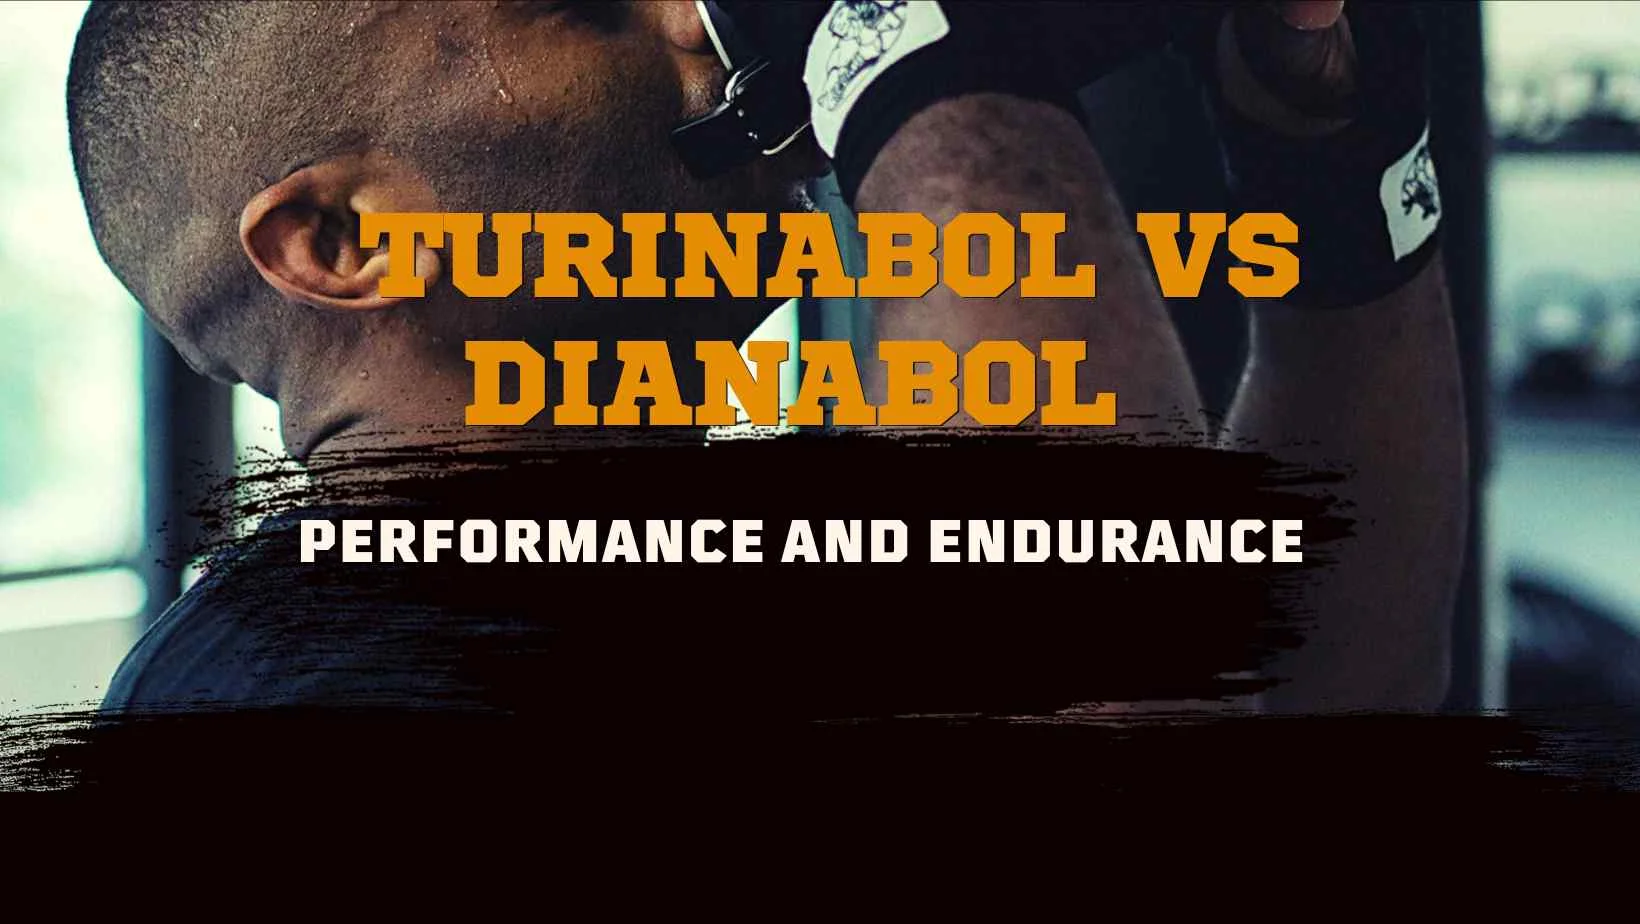 Turinabol vs Dianabol